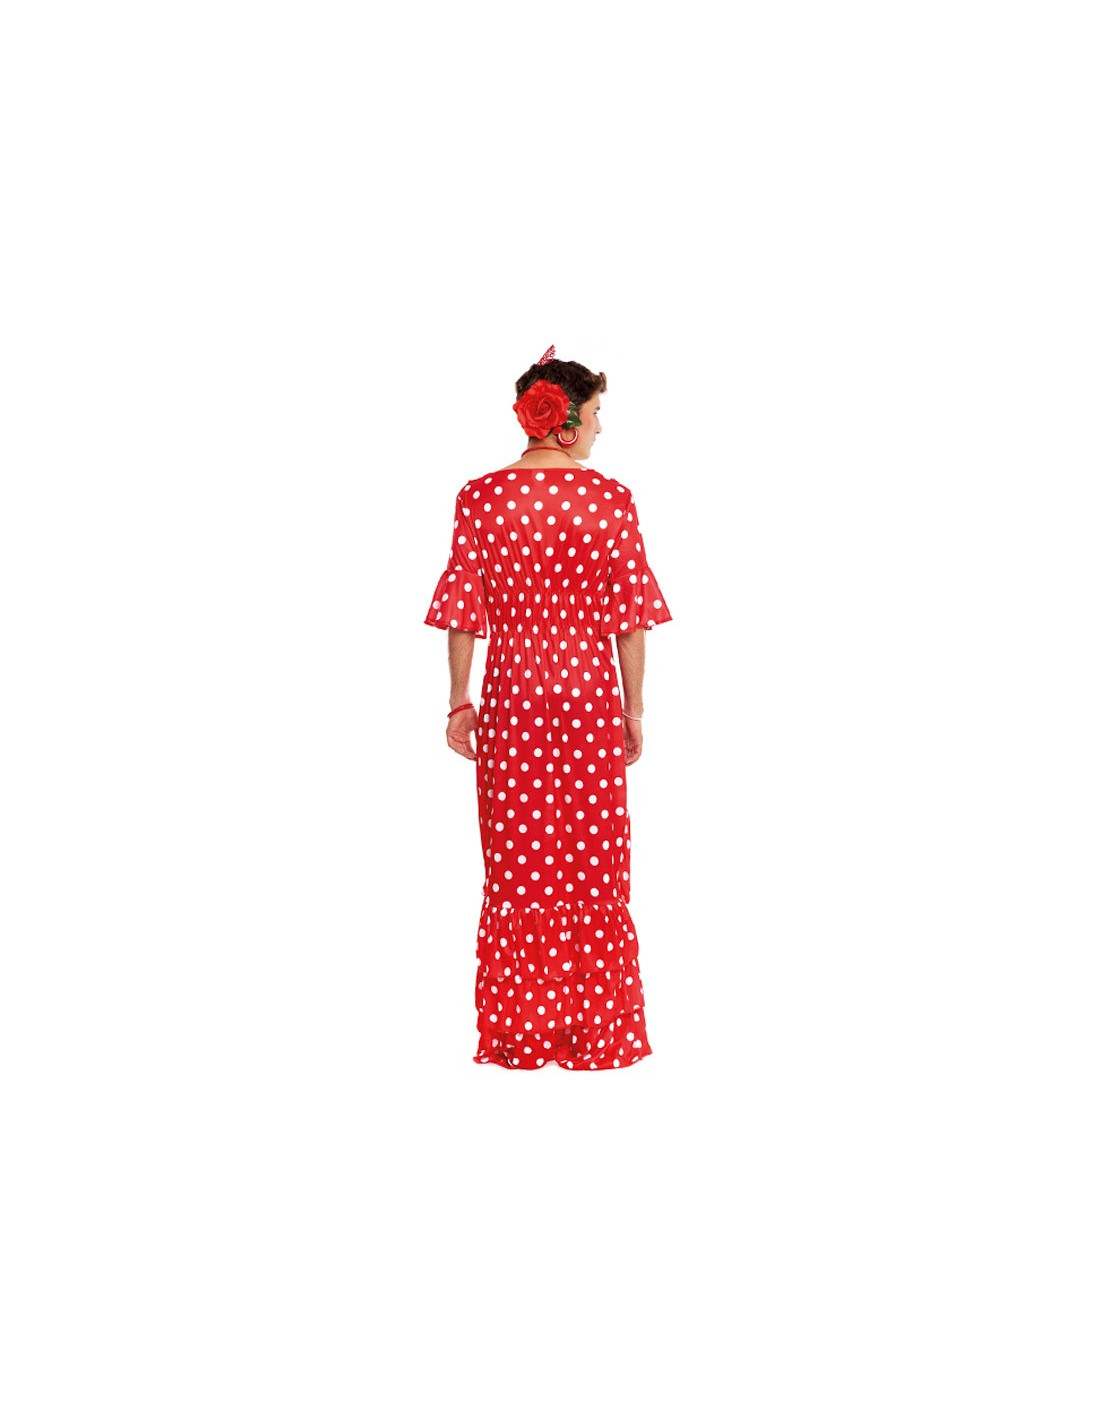 Cómo disfrazarse de flamenca